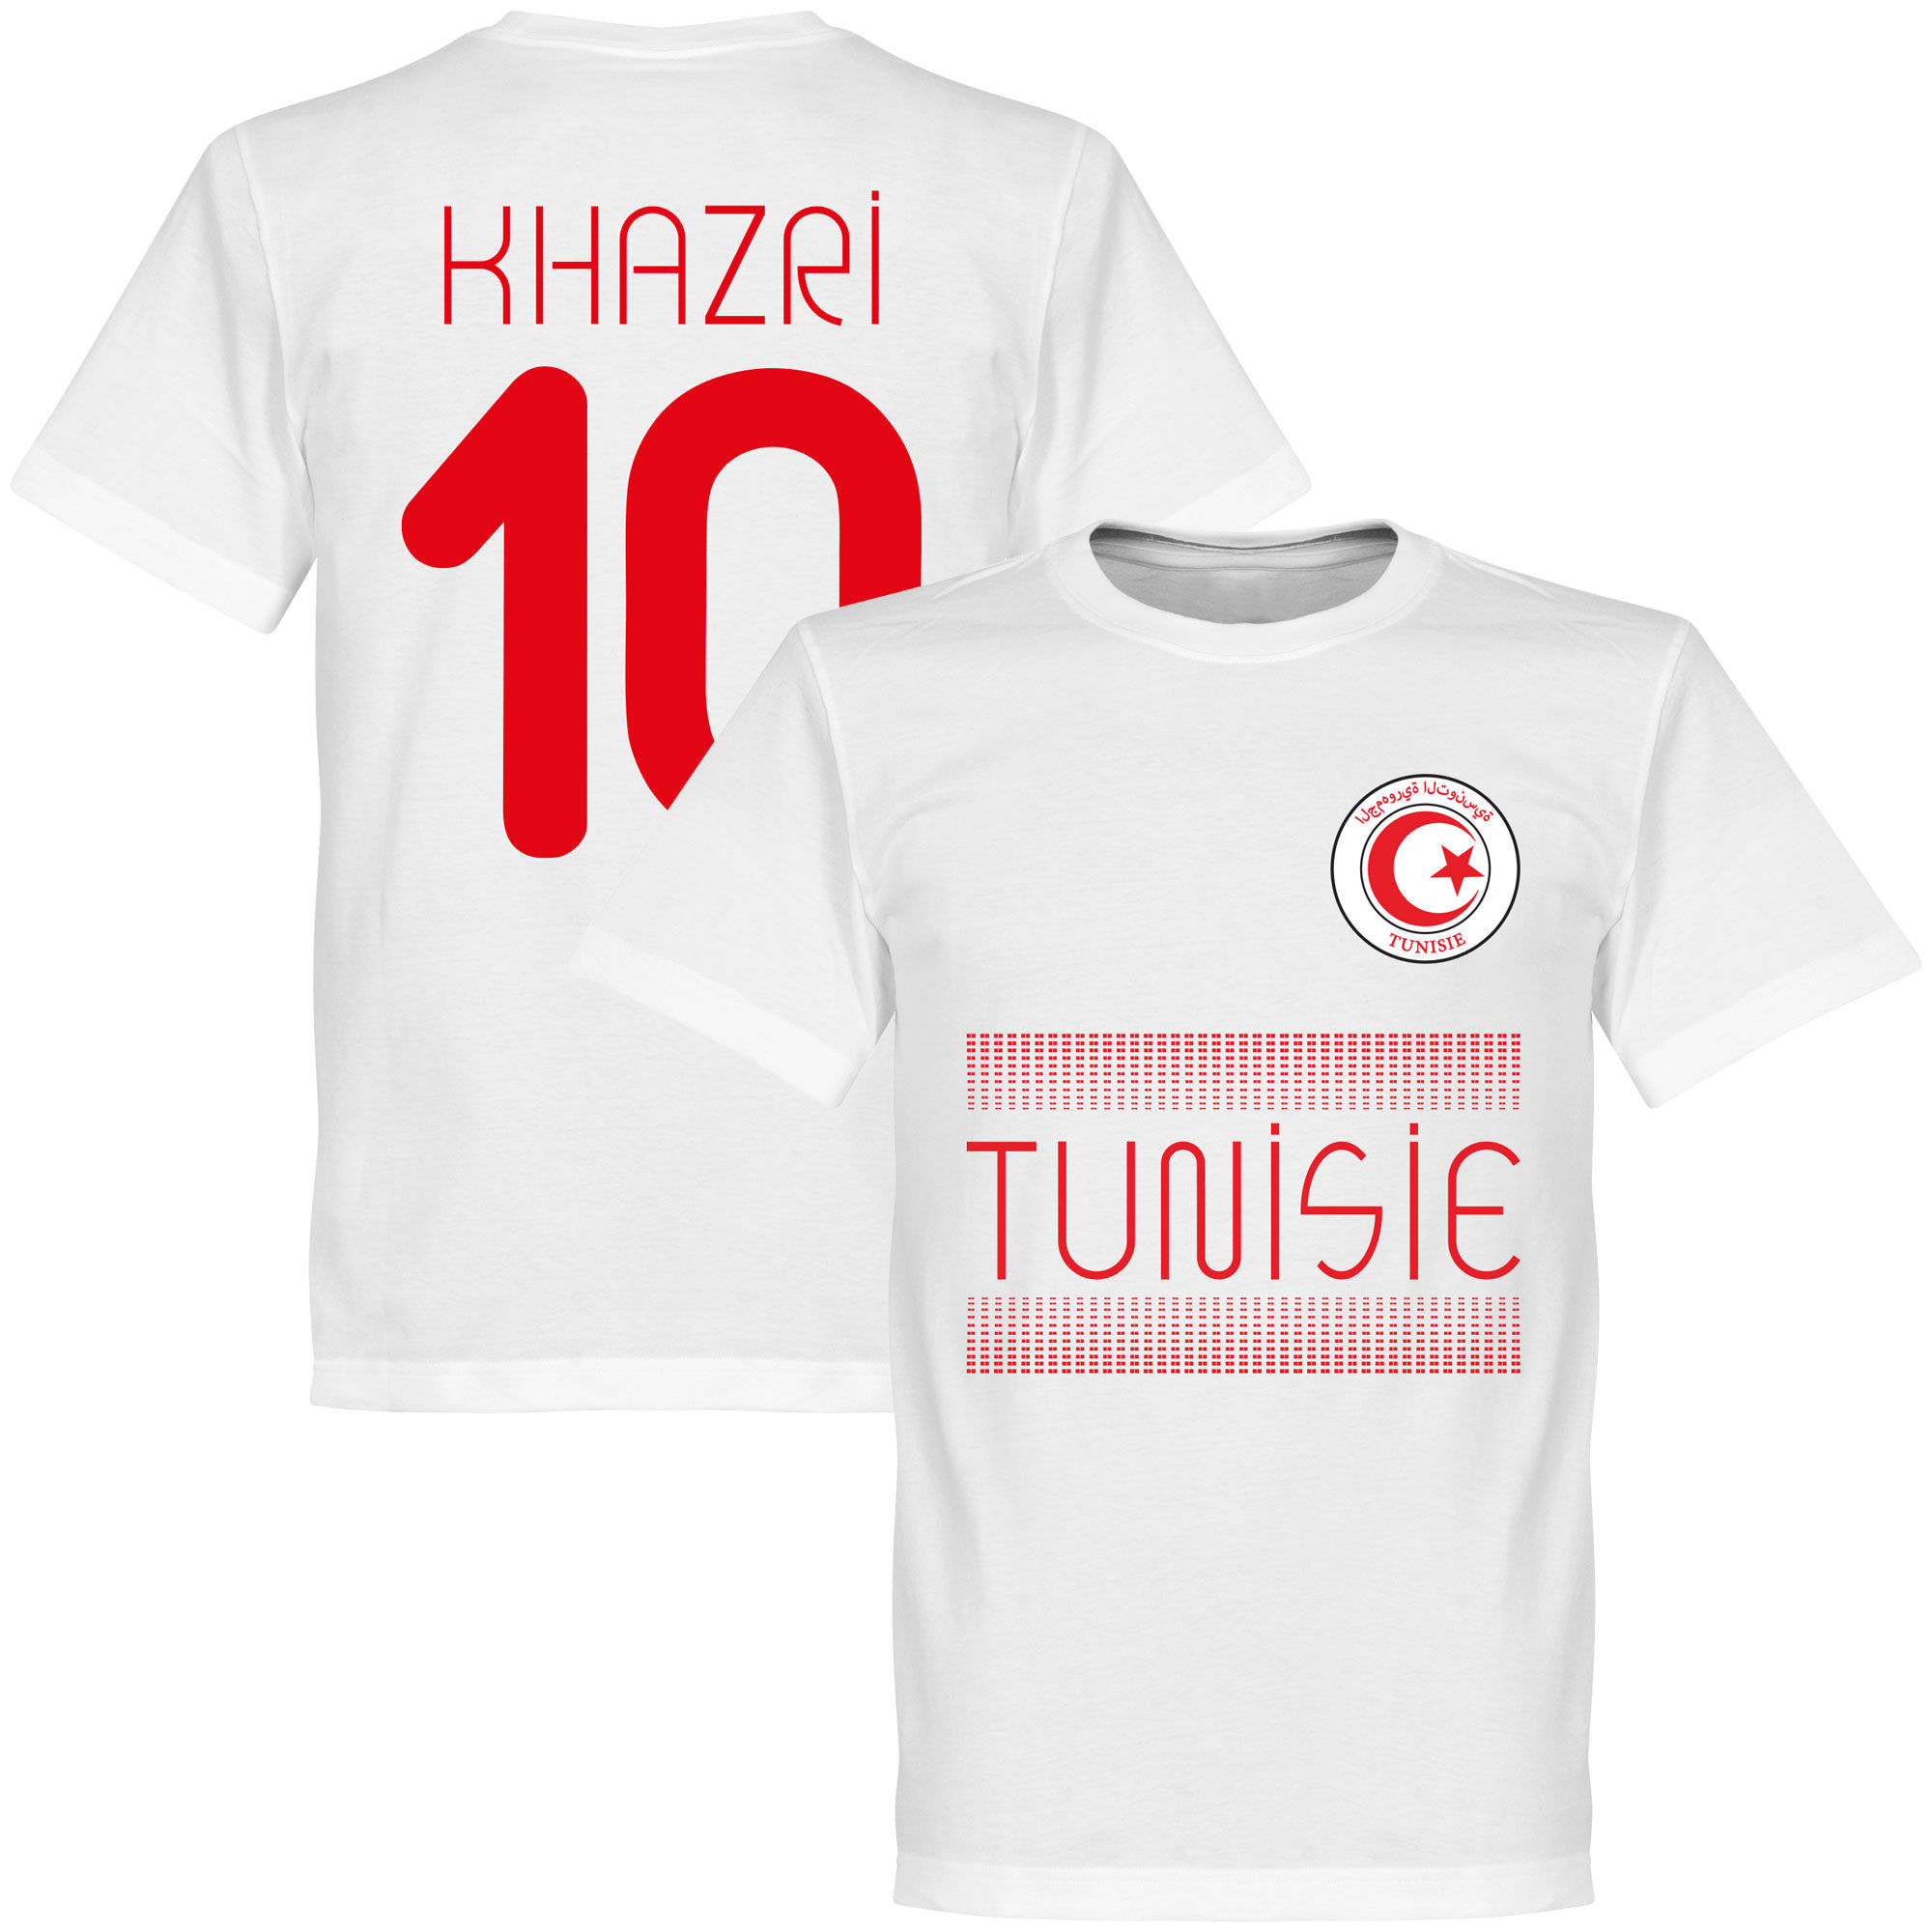 Tunisko - Tričko - bílé, Wahbi Khazri, číslo 10